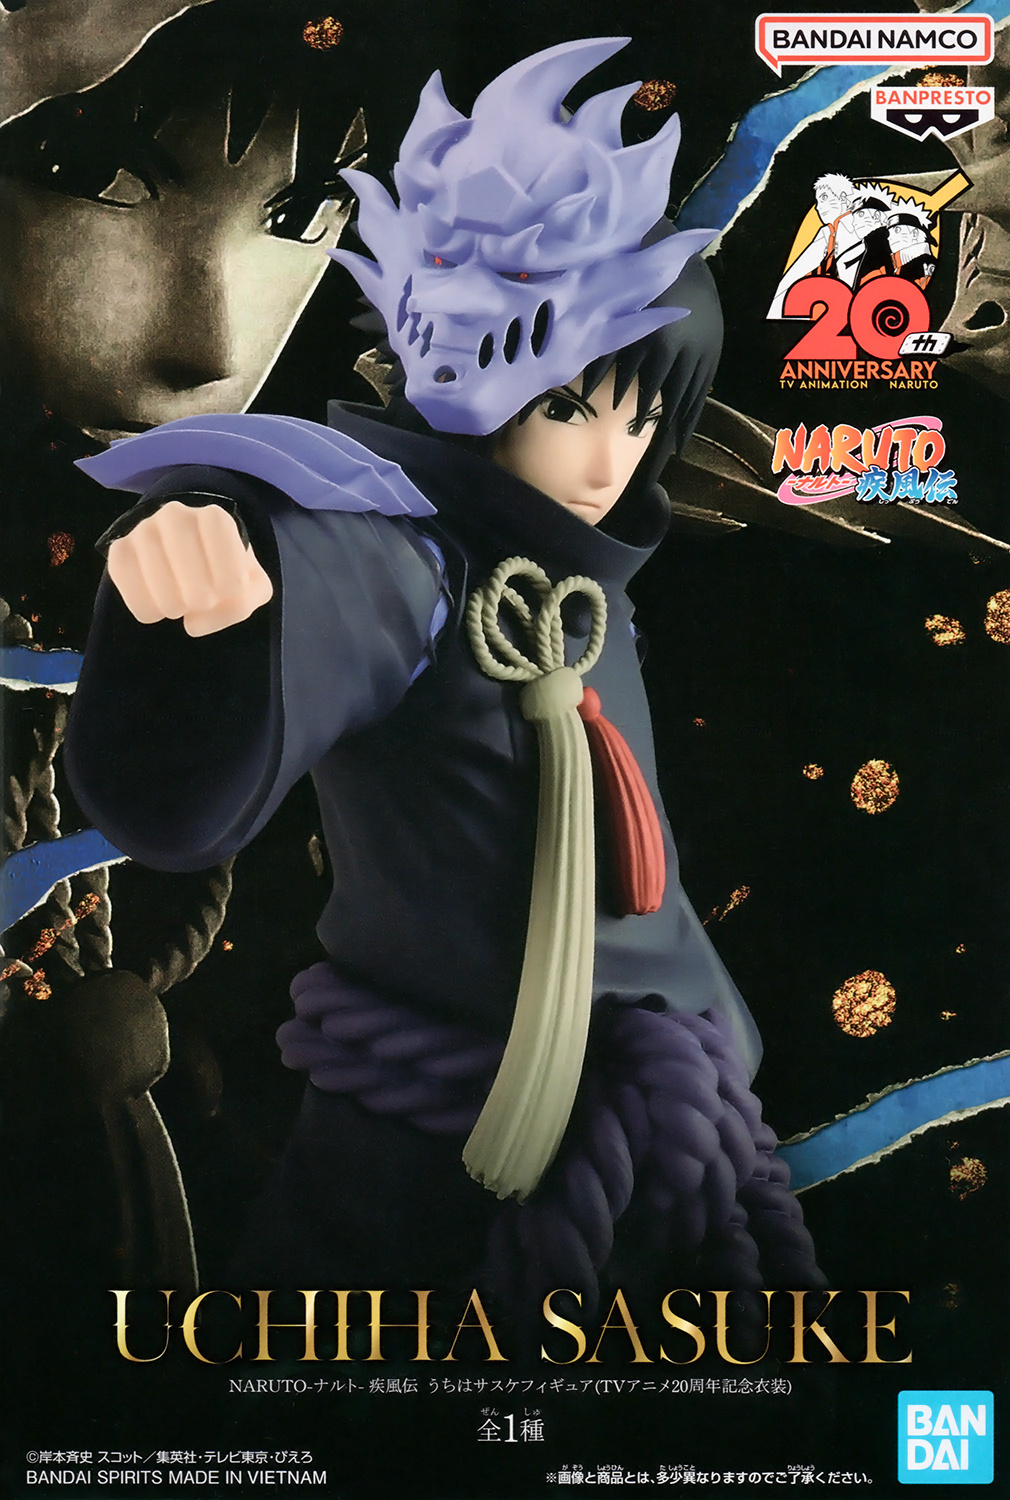 Sasuke Uchiha Naruto Shippuden Animation 20th TV BANDAI NAMCO